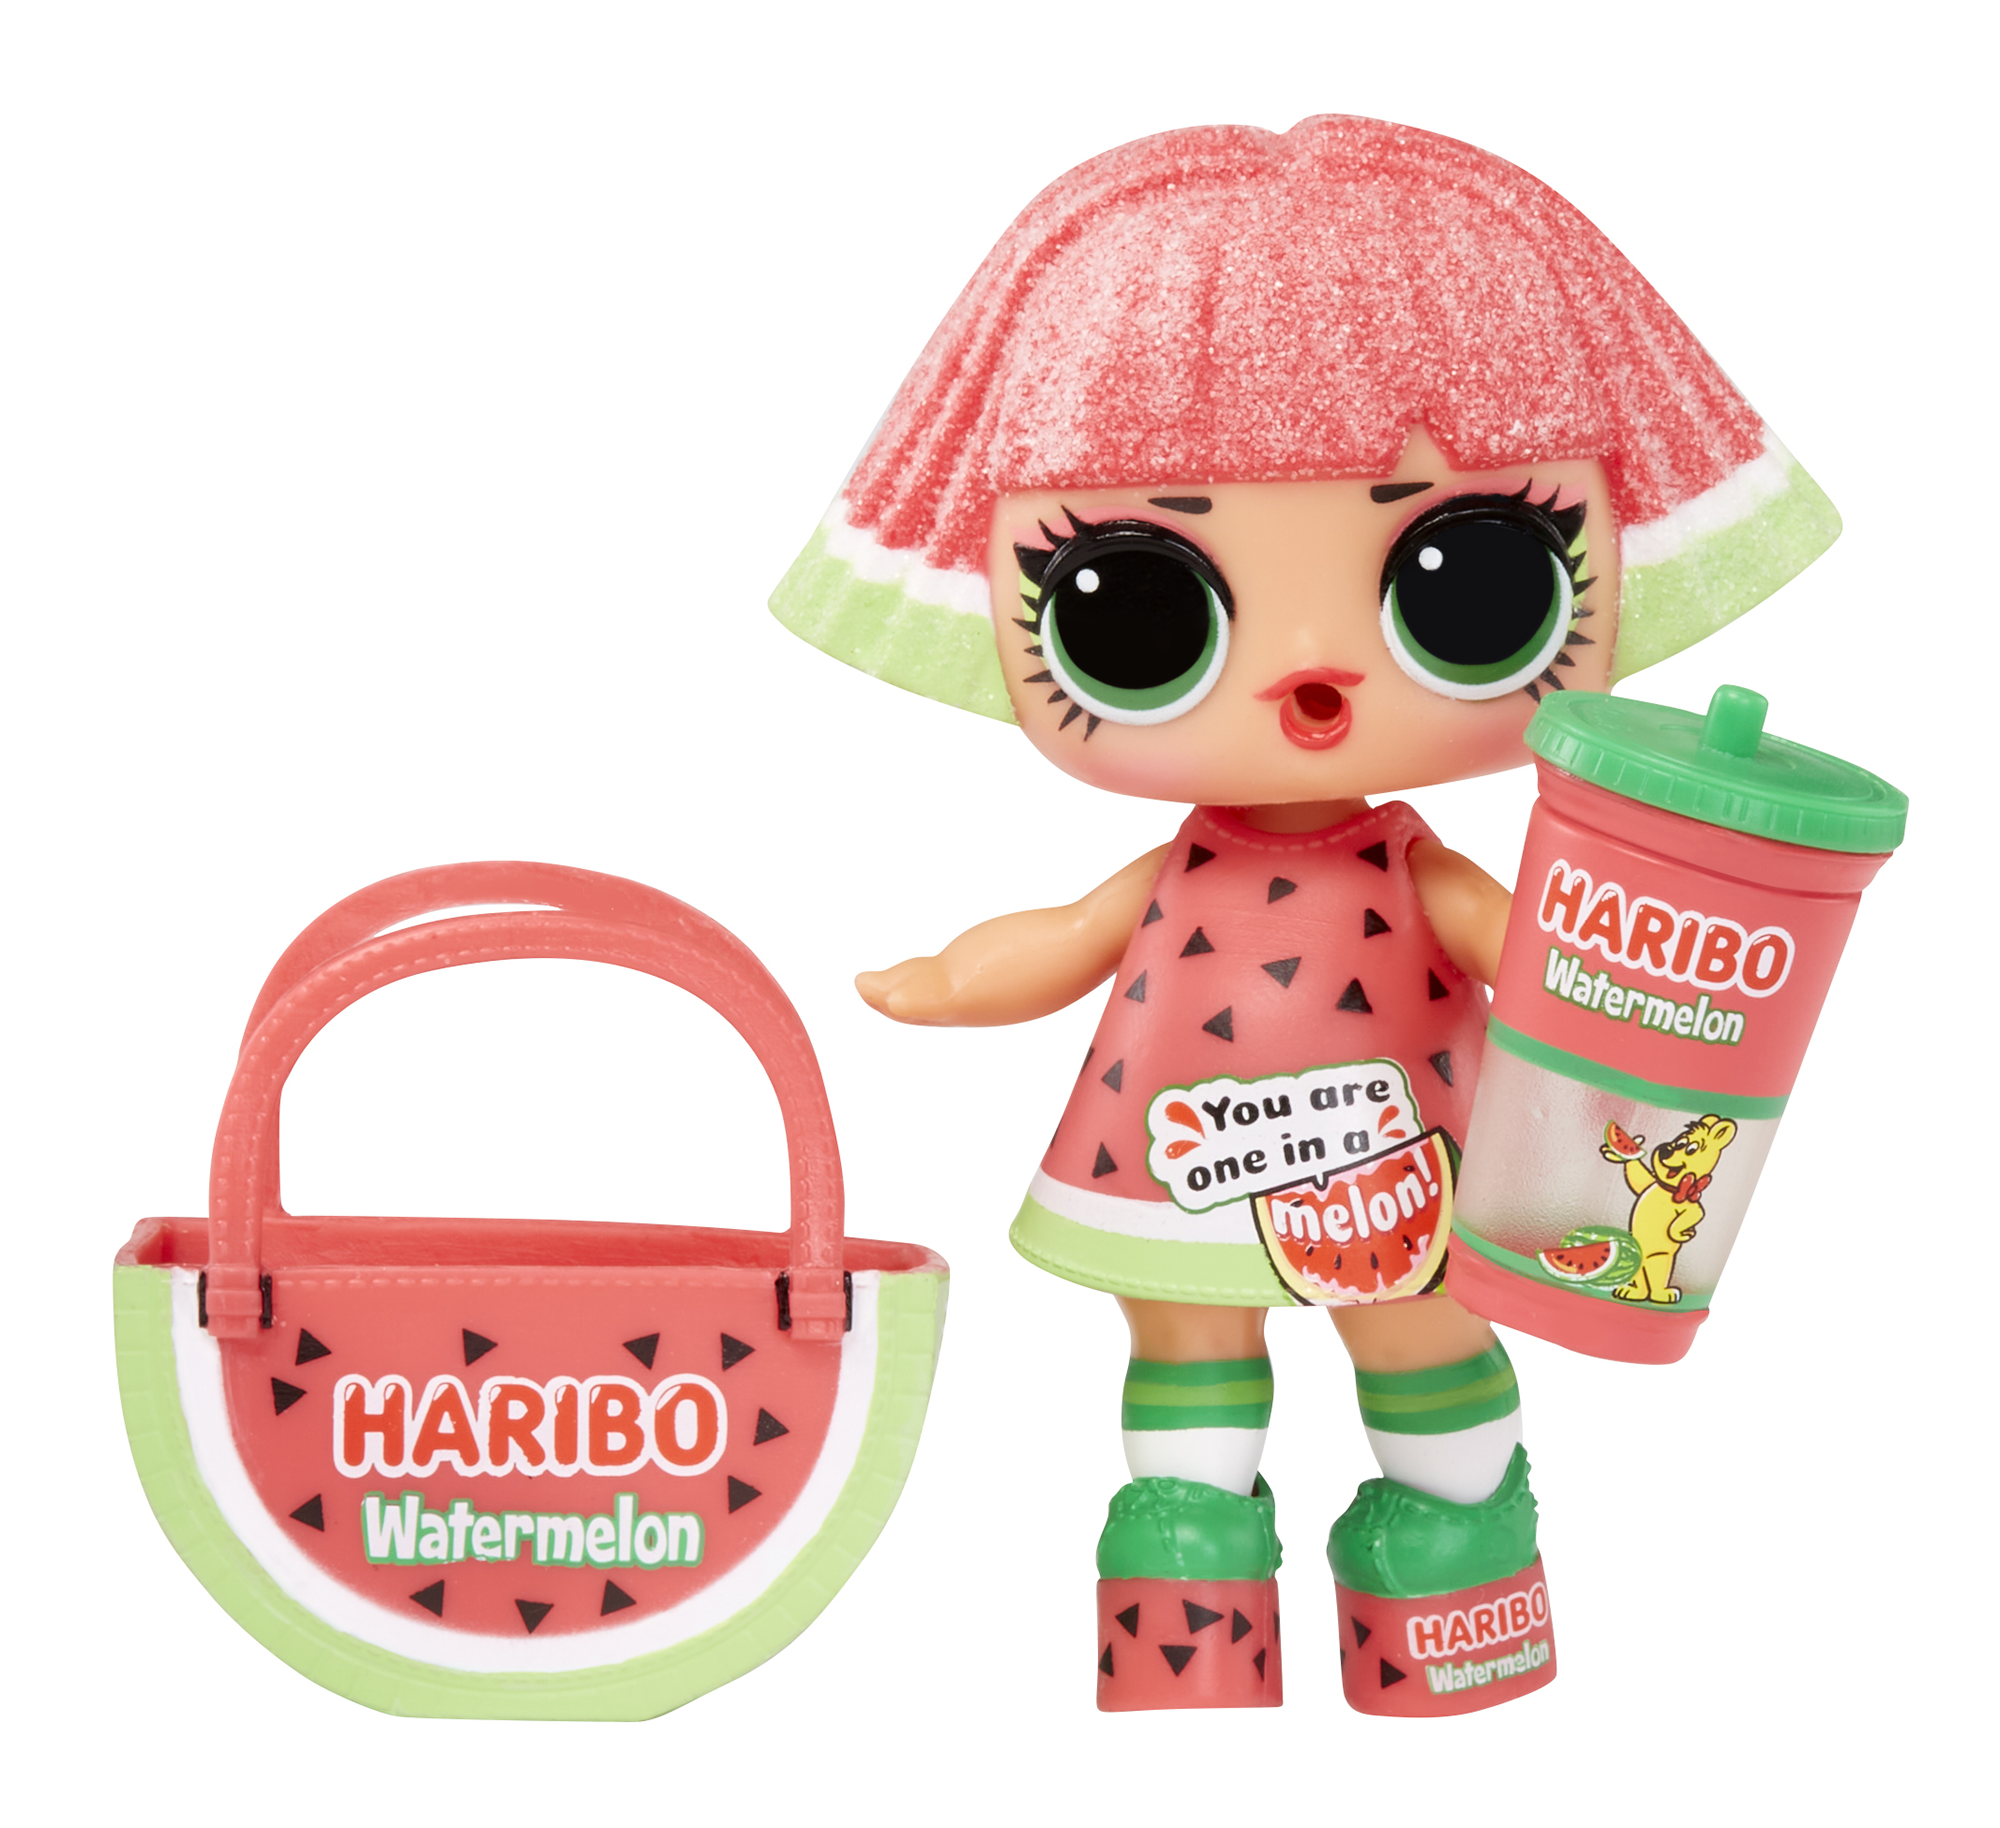 Lol surprise - loves mini sweets serie x haribo - include 1 bambola a tema caramelle e accessori divertenti - LOL